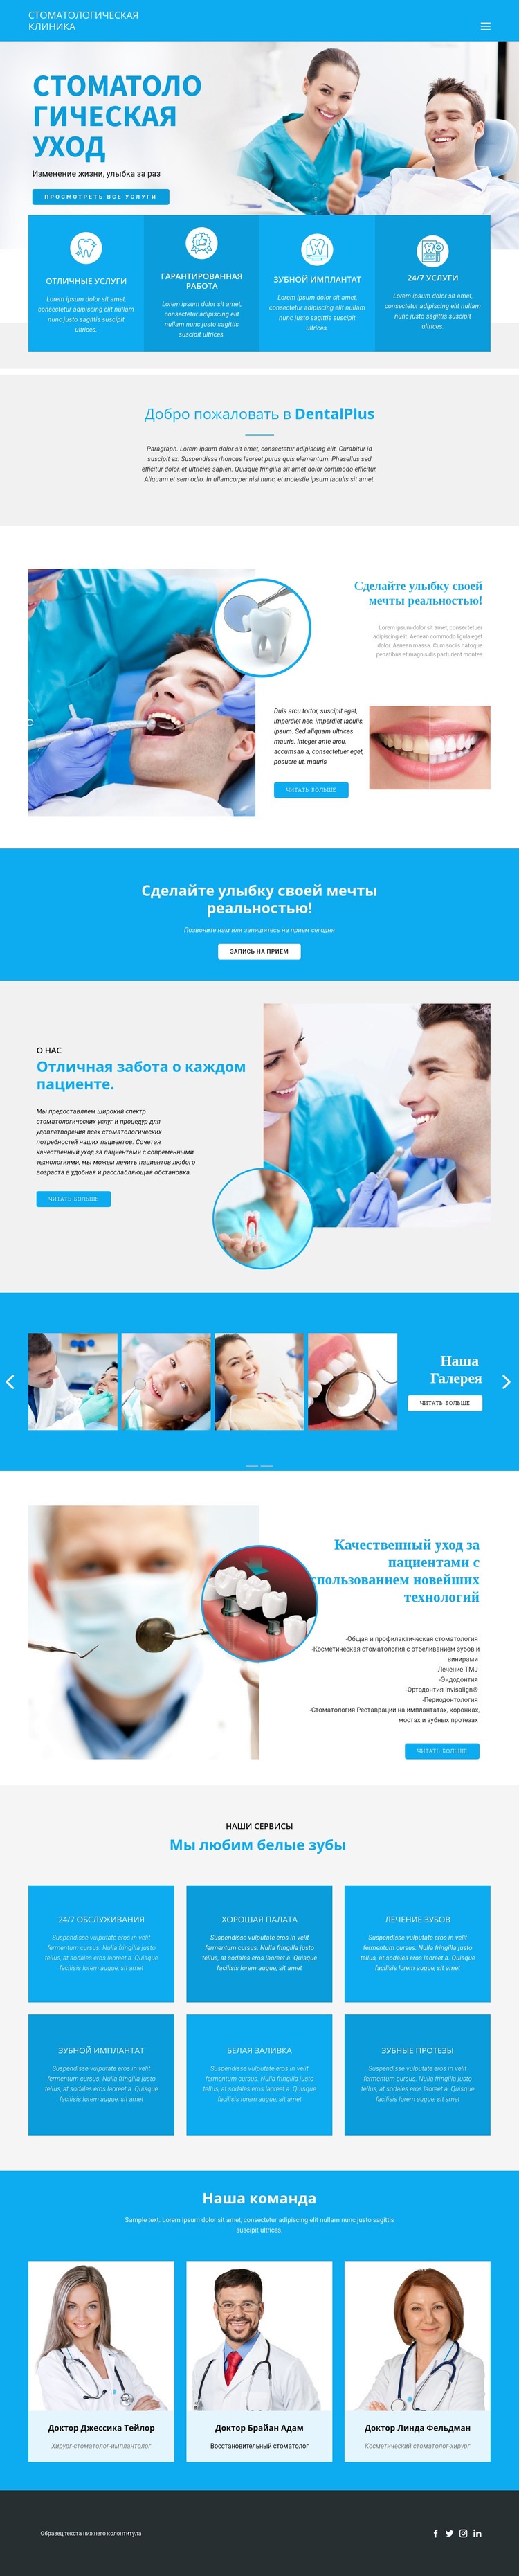 Стоматология и медицина HTML шаблон